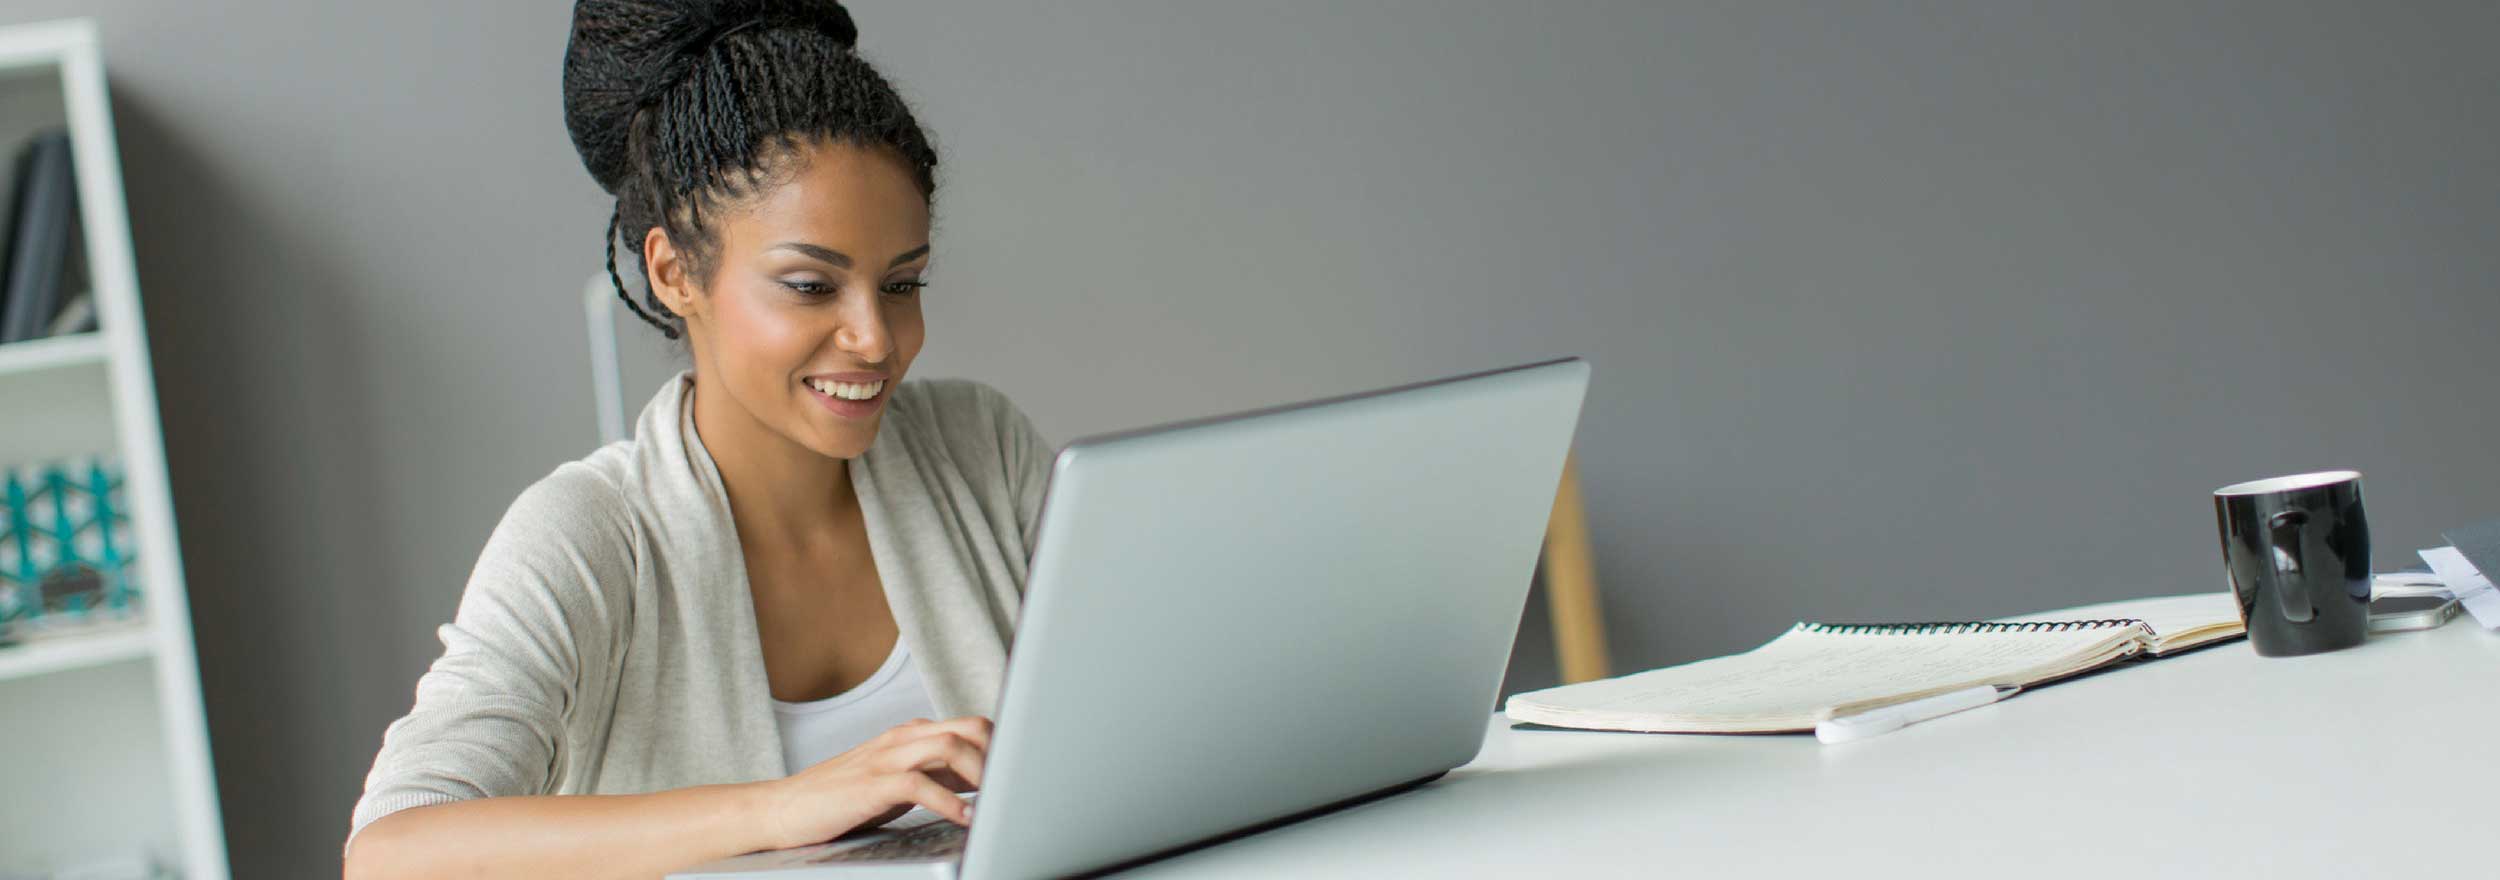 Man at desk smiling at laptop